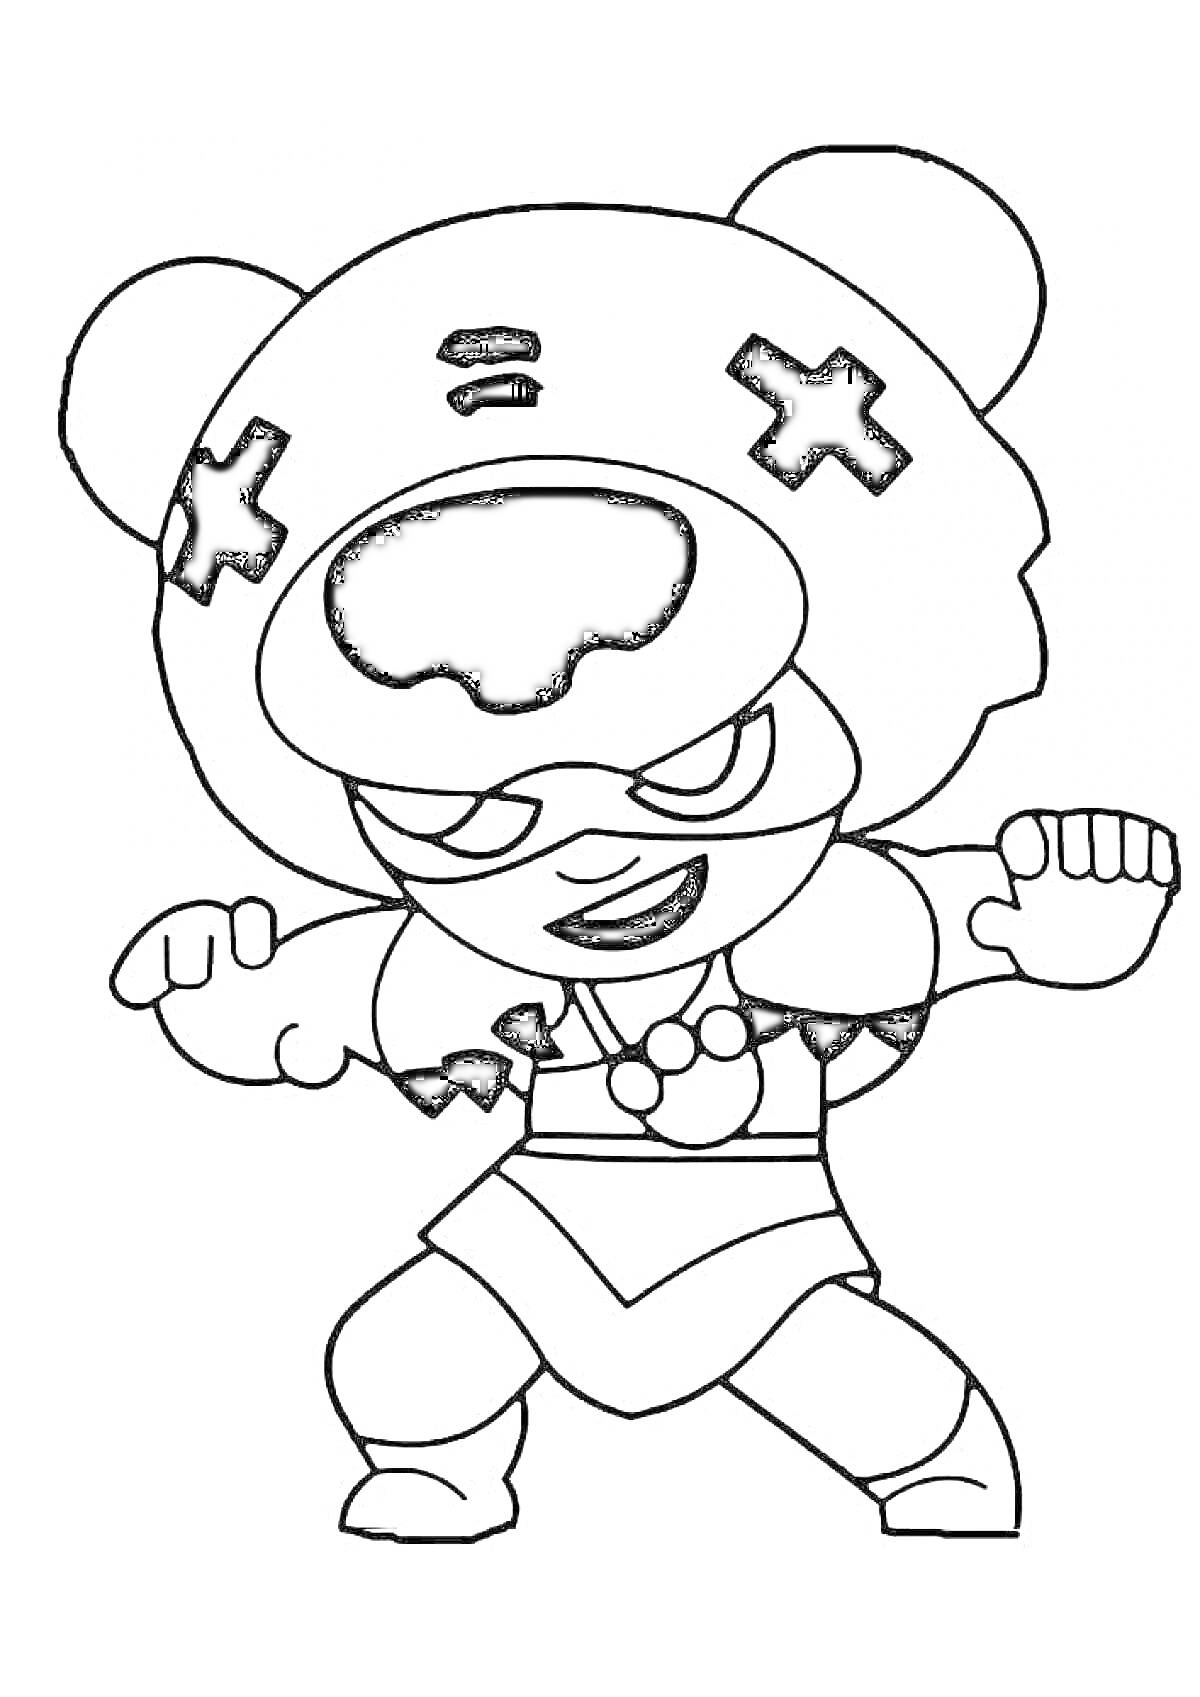 Раскраска Раскраска Нита из игры Brawl Stars в костюме медведя с крестами на голове и клыками на маске, в боевой позе